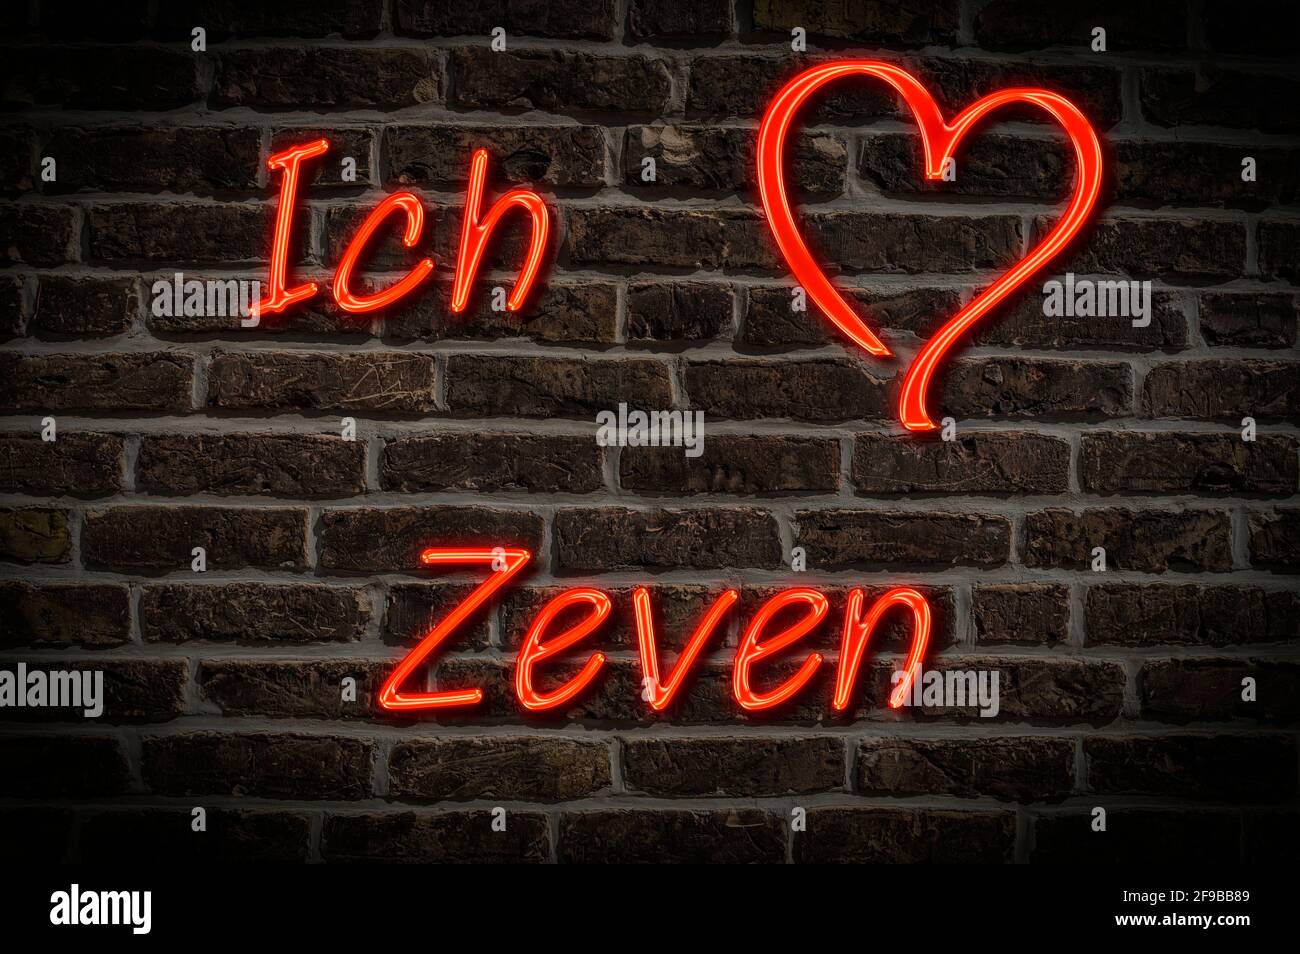 Leuchtreklame, Ich liebe Zeven, Niedersachsen, Deutschland, Europa | Illuminated advertising, I love Zeven, Lower Saxony, Germany, Europe Stock Photo